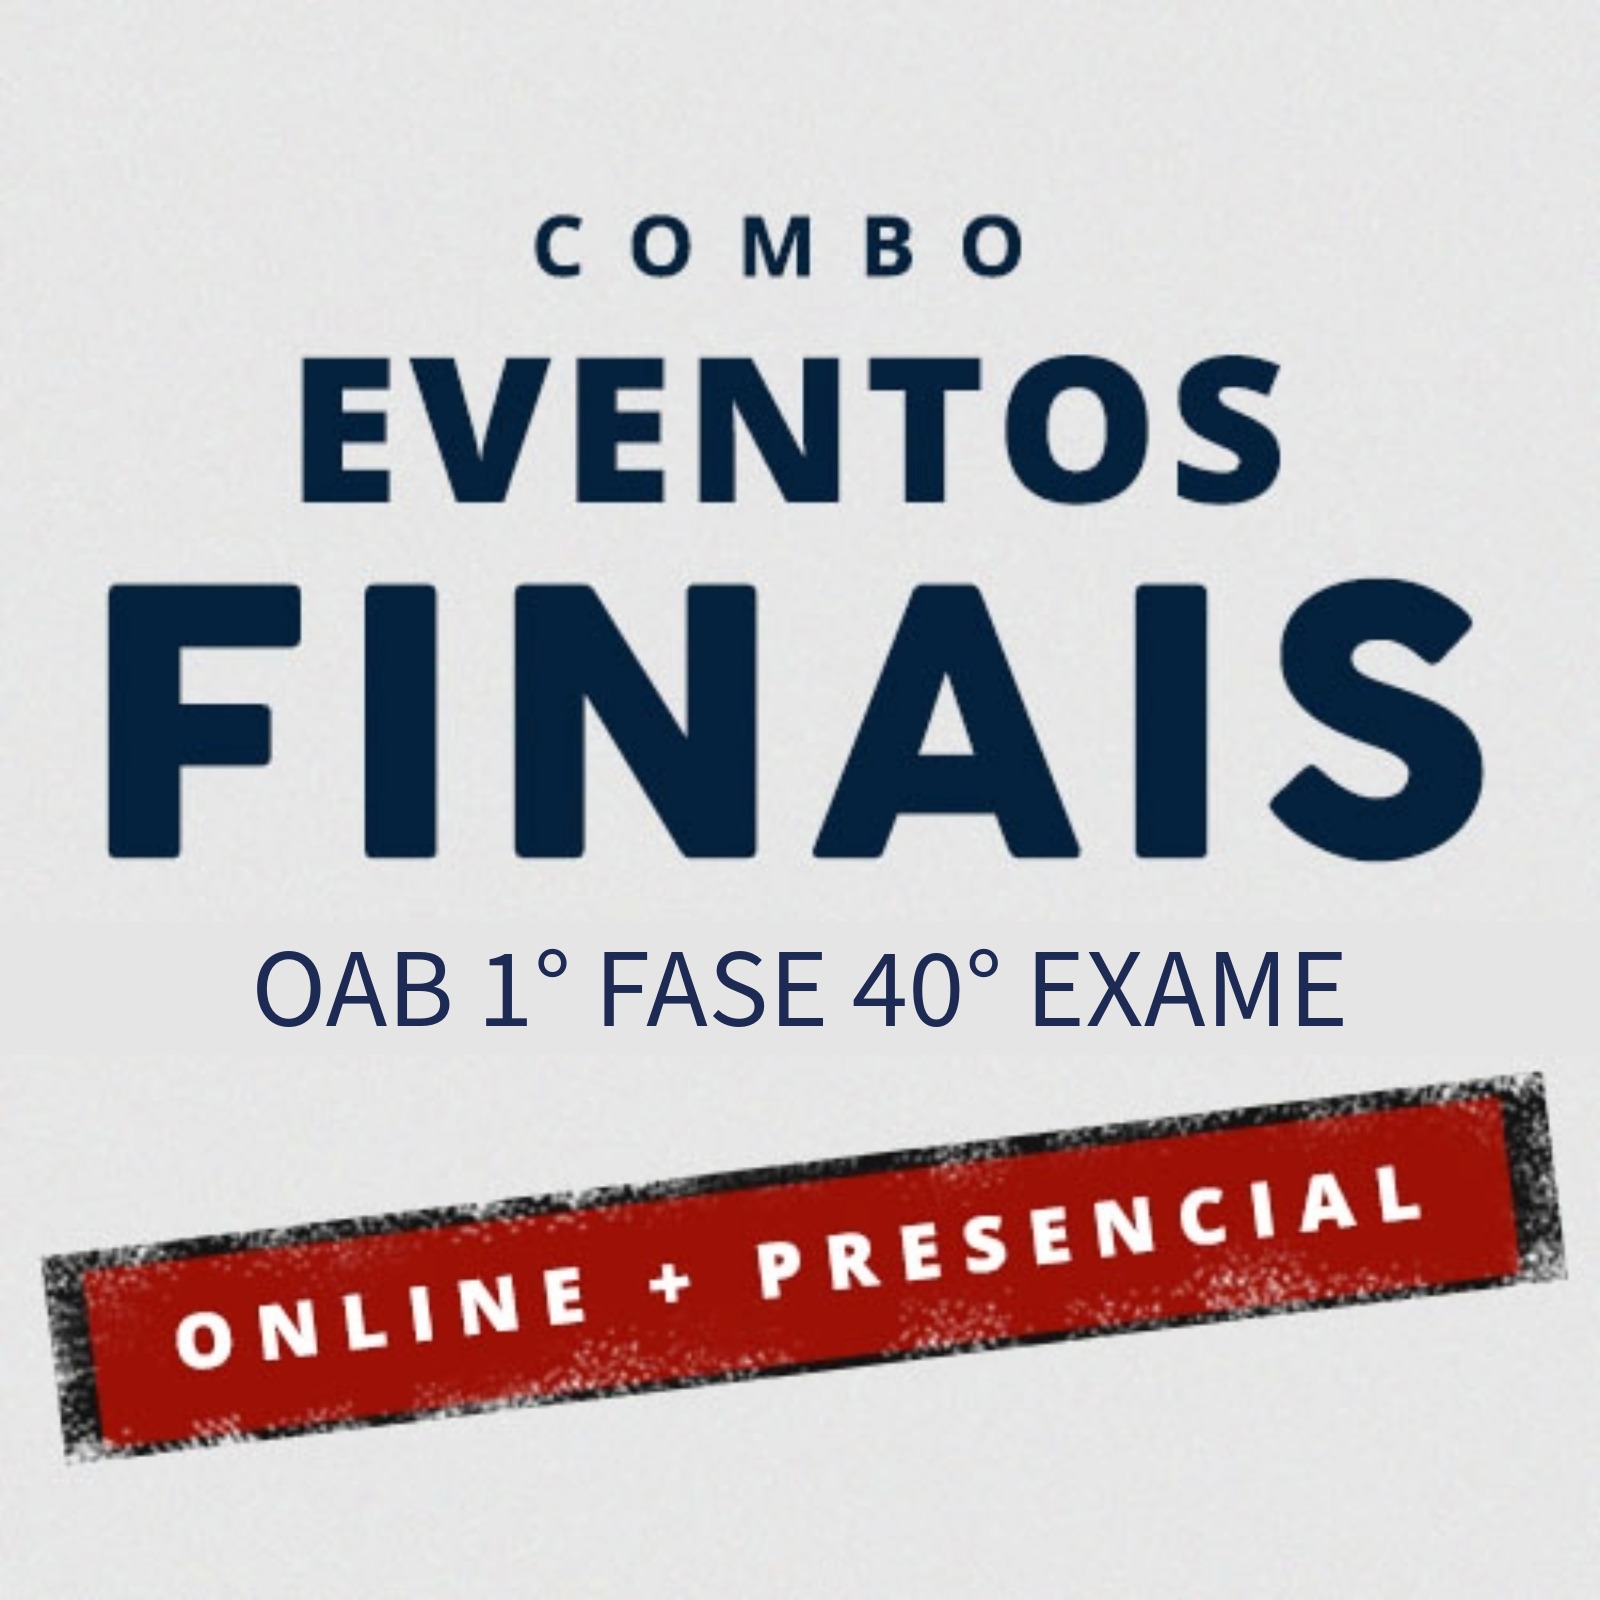 COMBO EVENTOS FINAIS - OAB 1 FASE 40 EXAME  - ONLINE/PRESENCIAL 